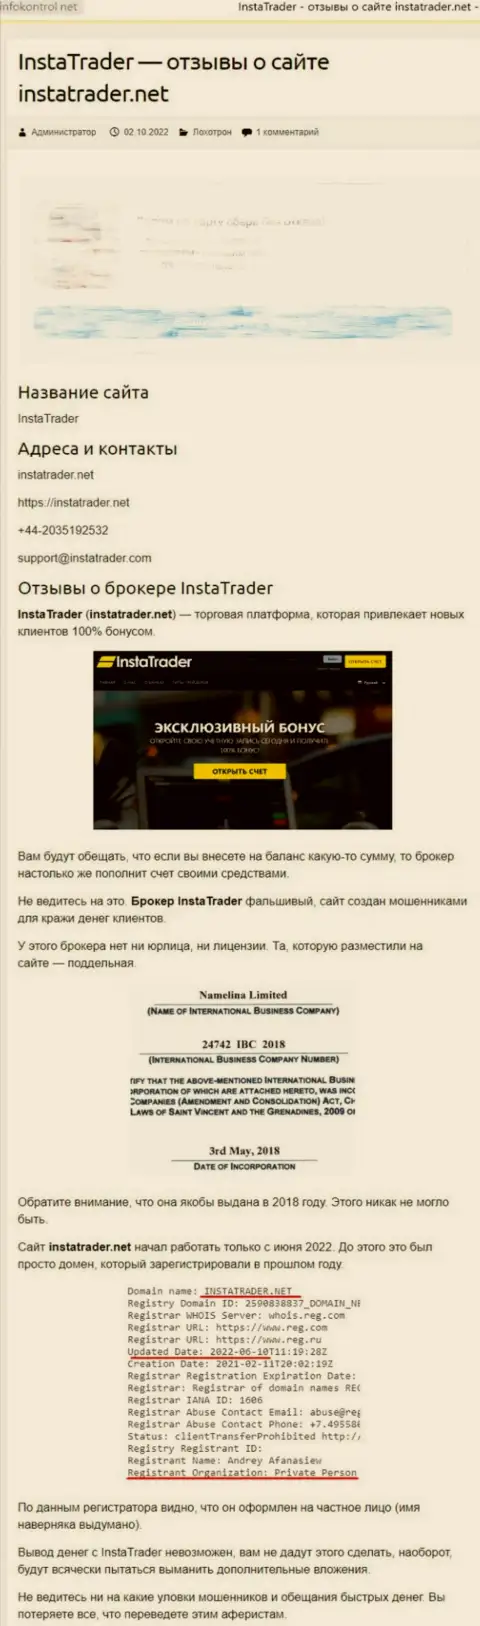 InstaTrader Net - это компания, которая зарабатывает на отжатии денежных вложений клиентов (обзор)